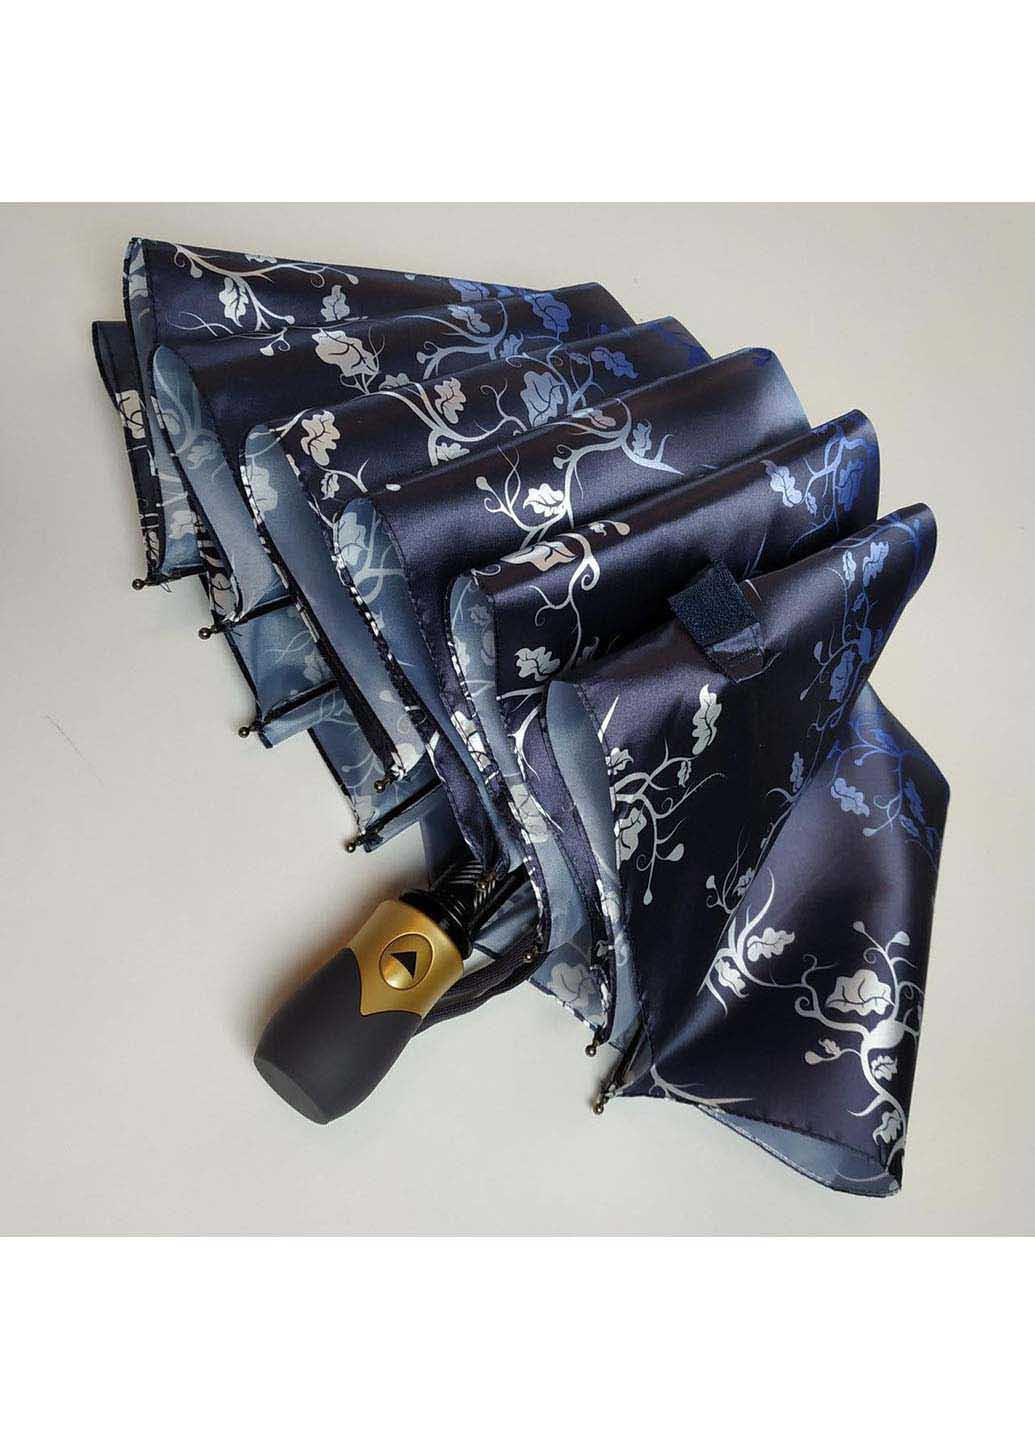 Зонт Bellissimo 401-1 складной синий